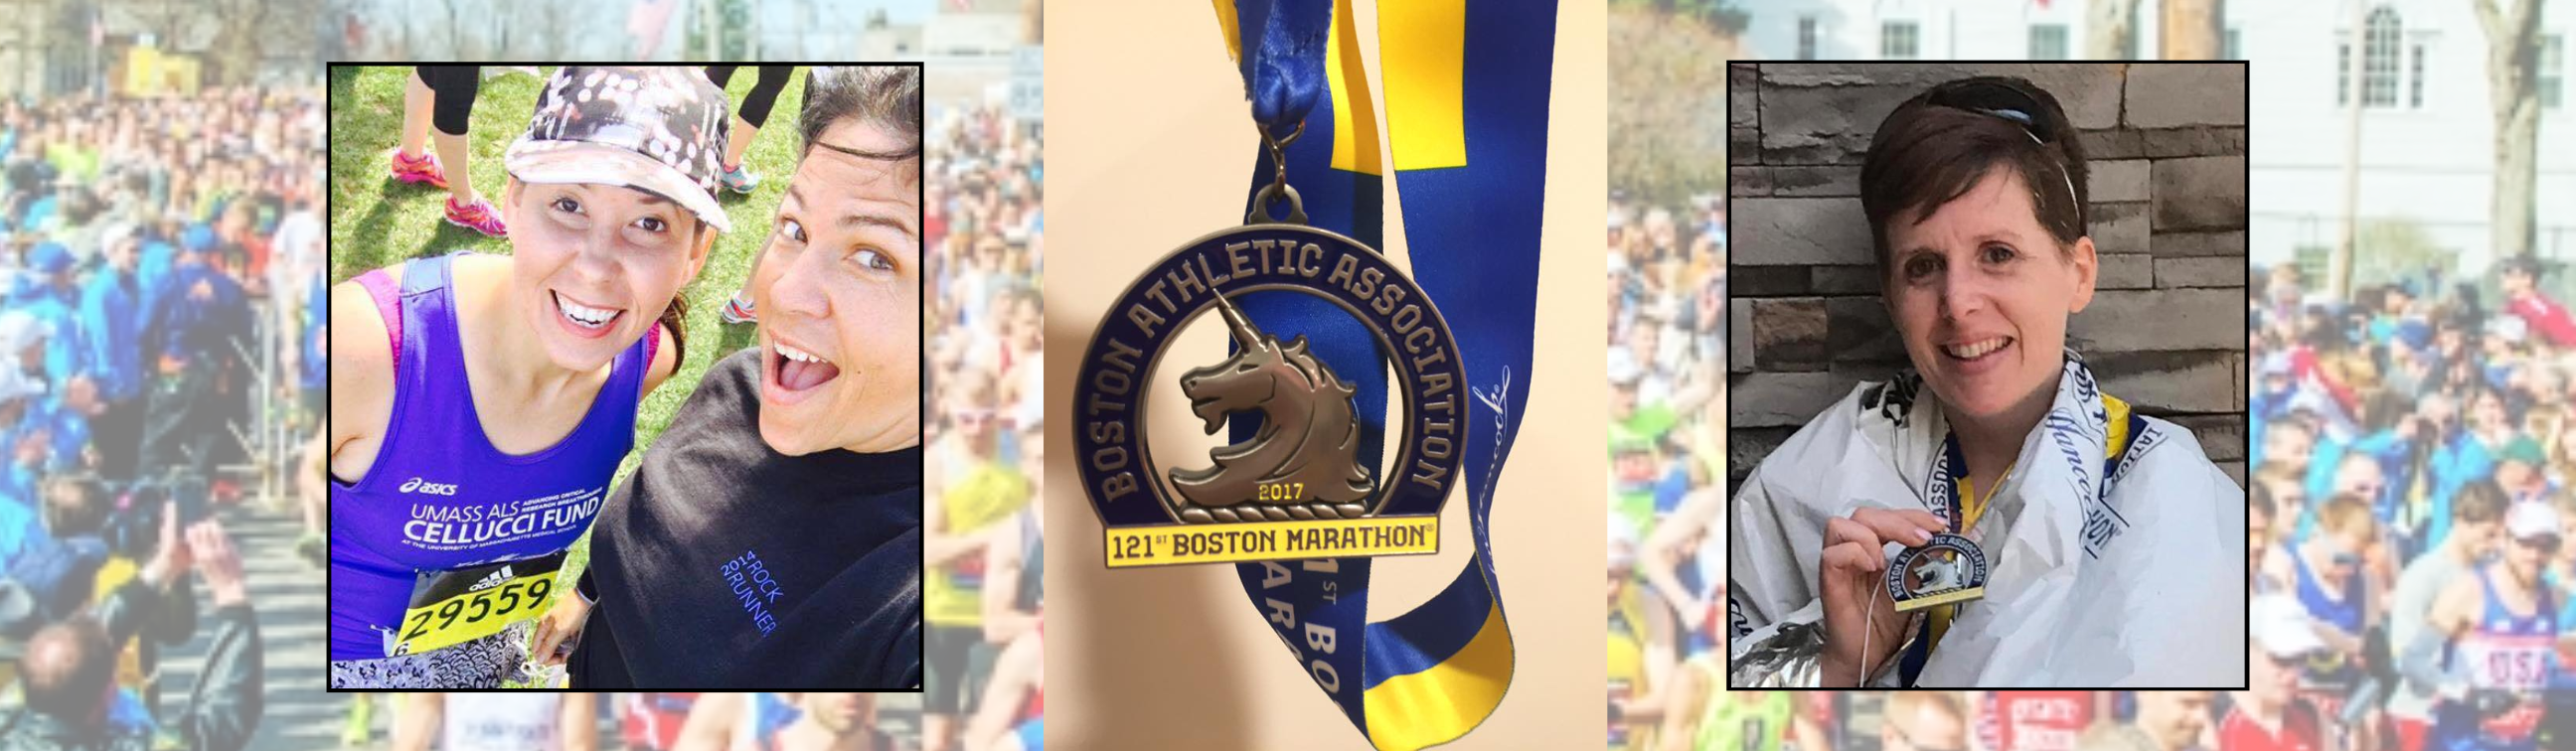 Five Boston Marathon runners support UMass ALS Cellucci Fund